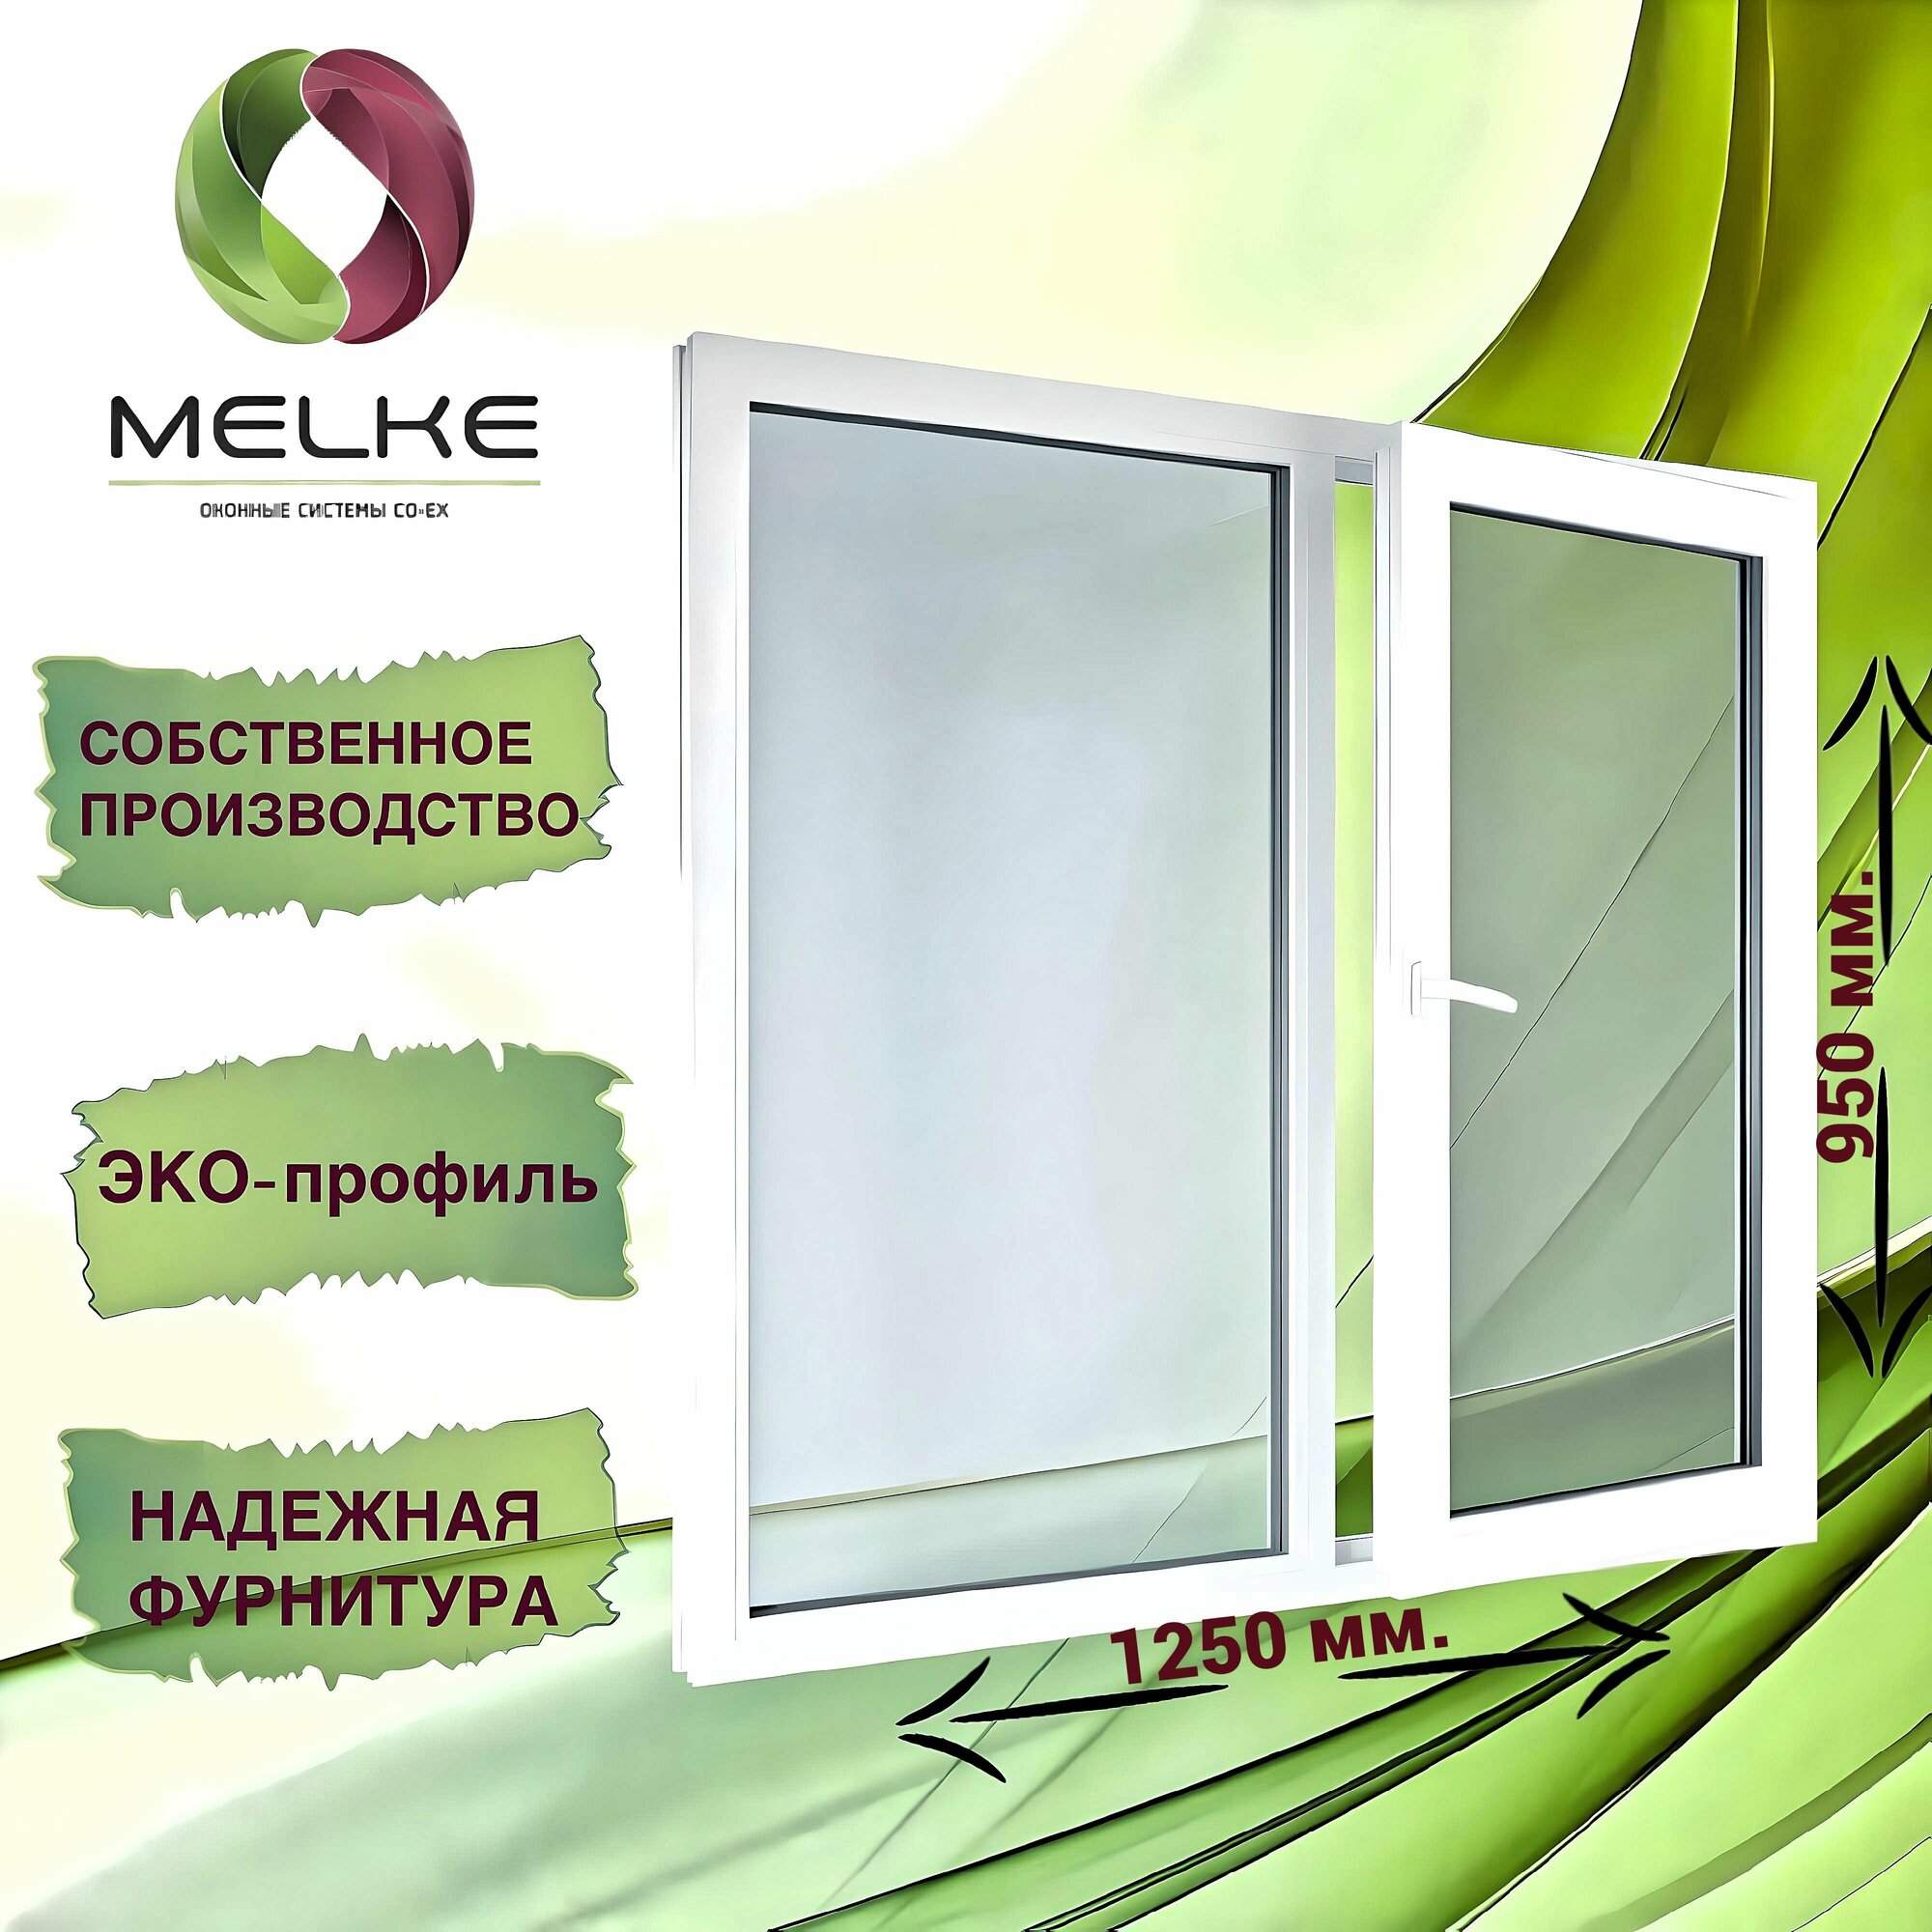 Окно 950 x 1250 мм, профиль Melke 60 (Фурнитура FUTURUSS), двухстворчатое, с поворотно-откидной правой и глухой левой створками, 2-х камерный стеклопакет, 3 стекла